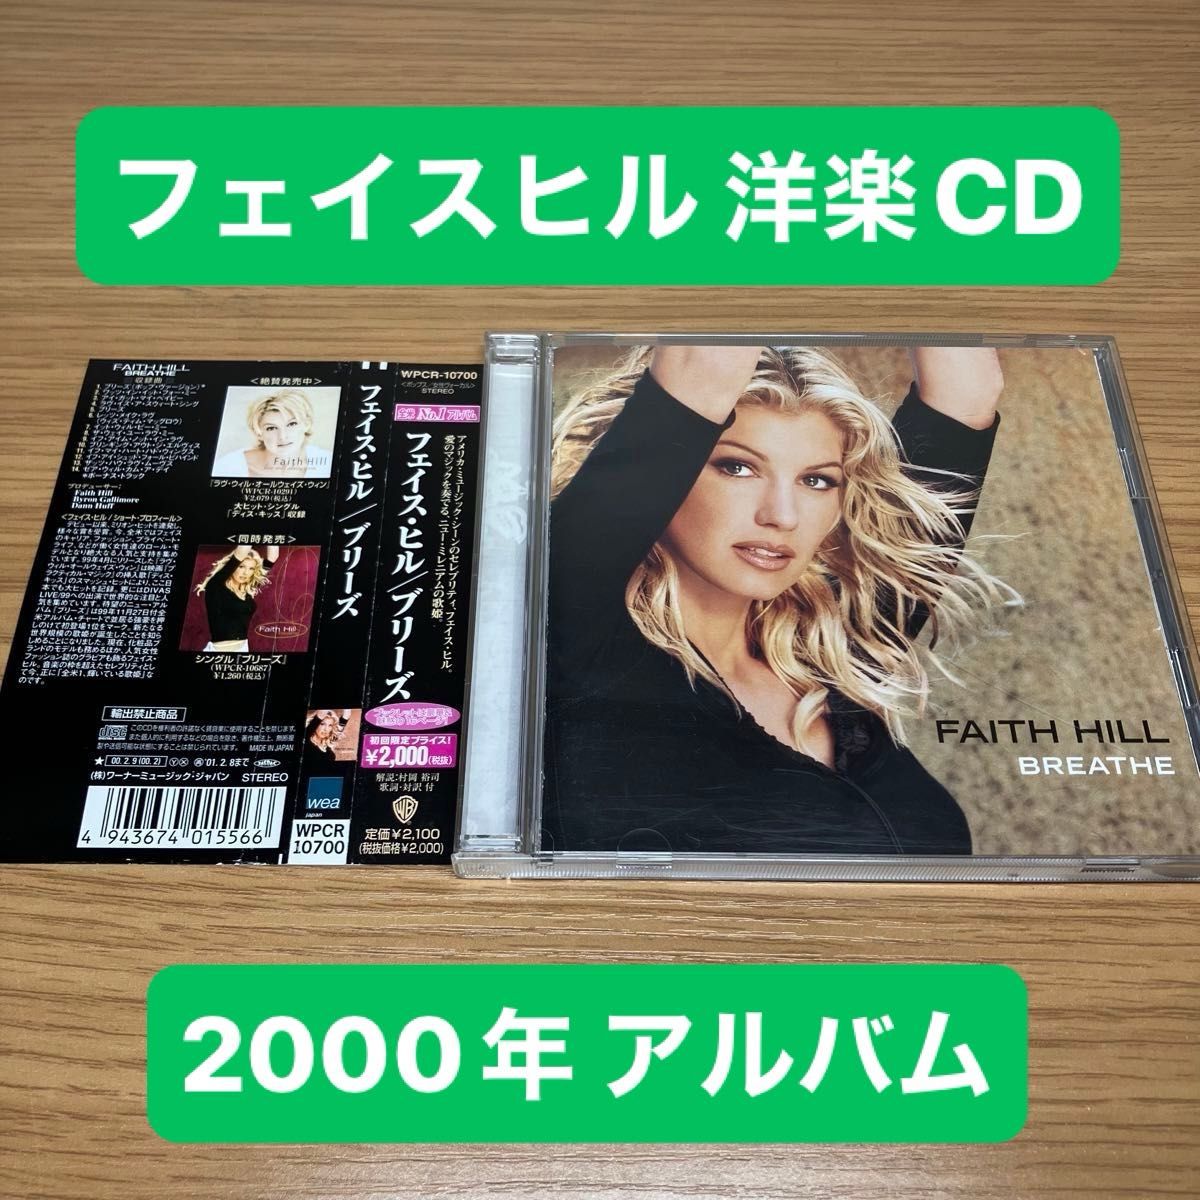 ブリーズ ／ フェイスヒル 音楽CD サンプル盤 アルバム